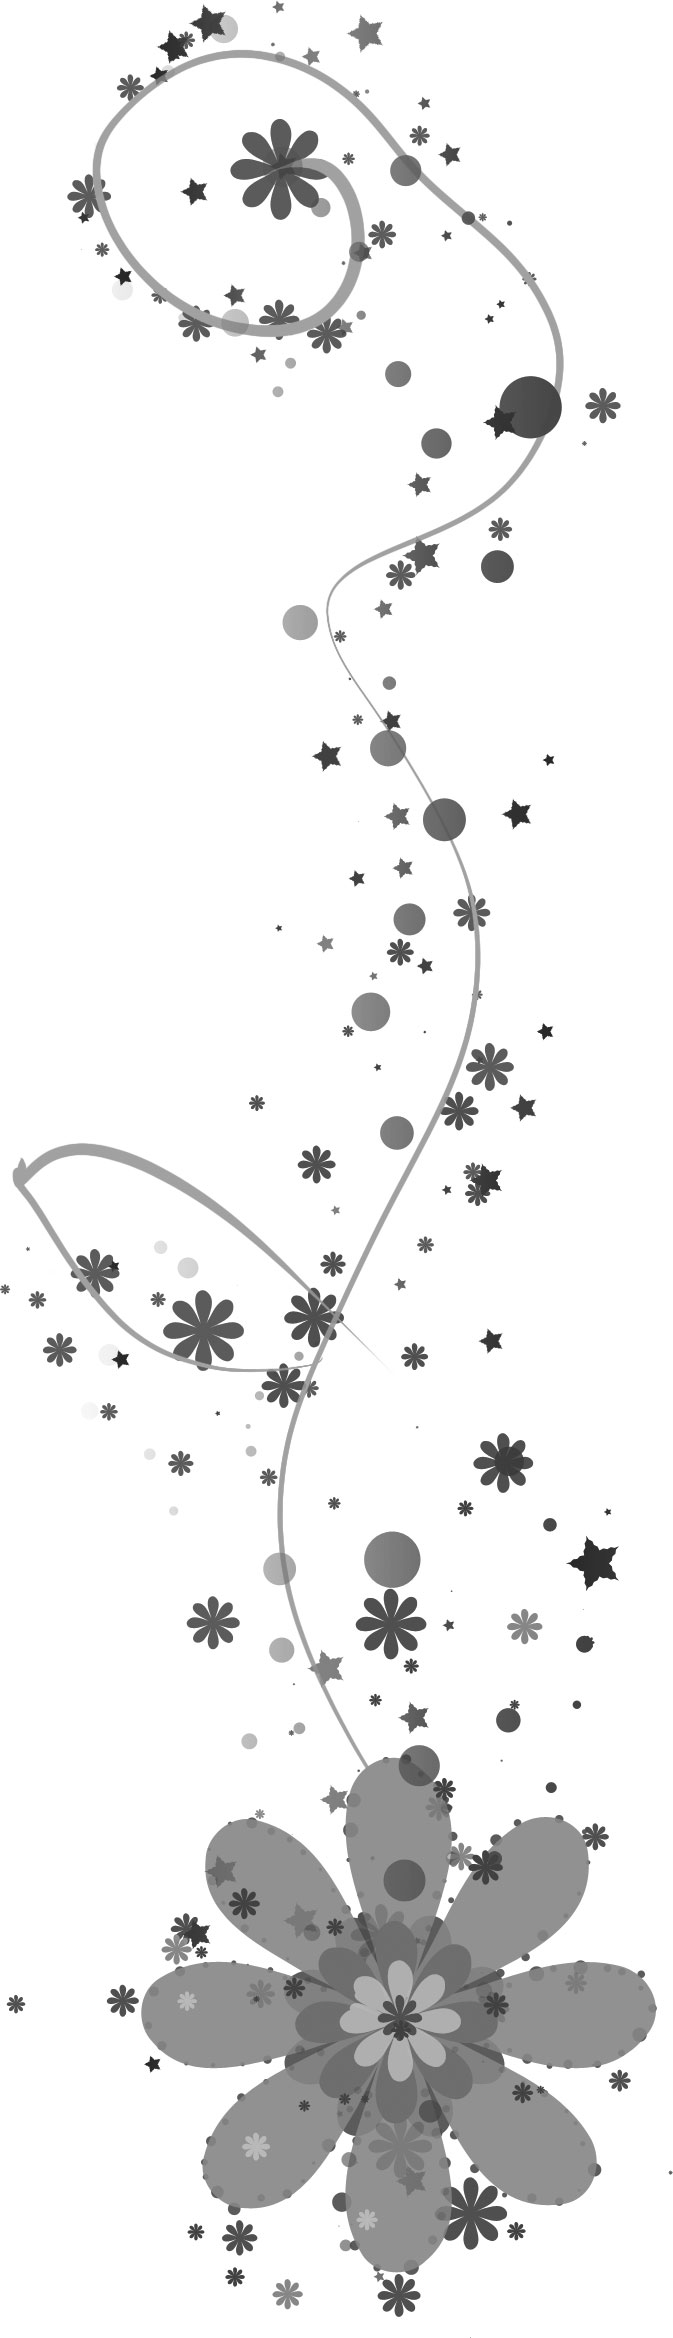 ポップでかわいい花のイラスト フリー素材 No 1358 白黒 大小 星